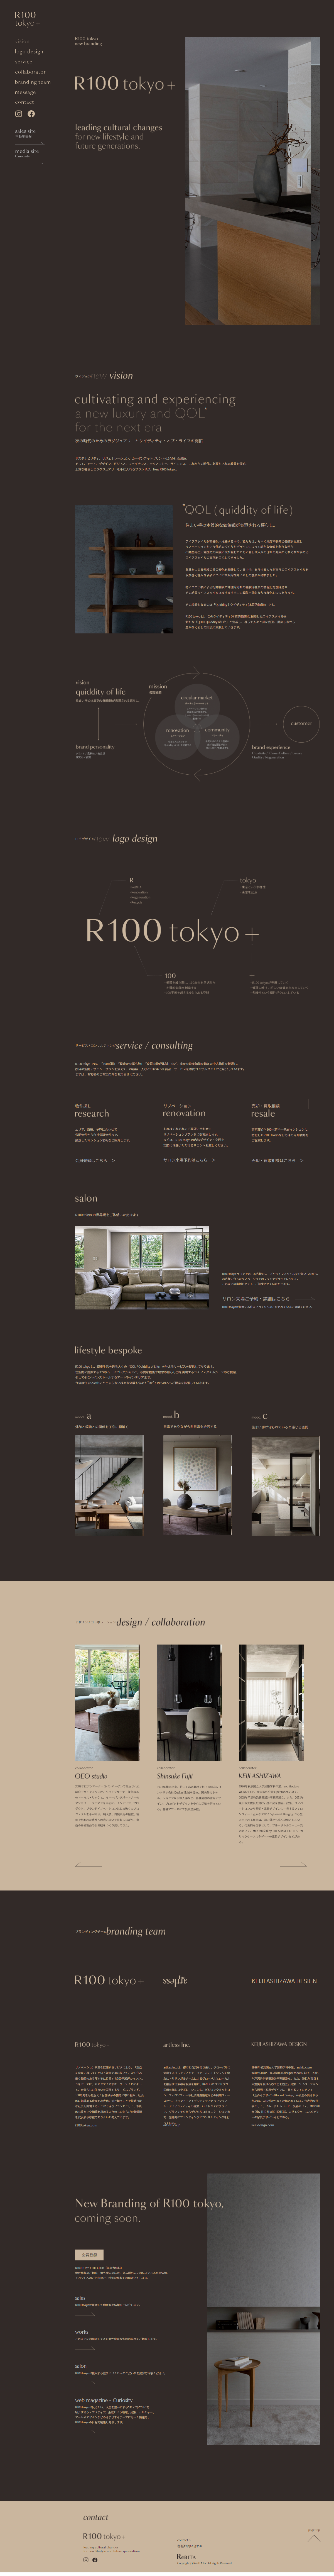 建築･不動産・建設・開発 Webマガジン制作 WEBデザイン参考ギャラリー R100 tokyo +